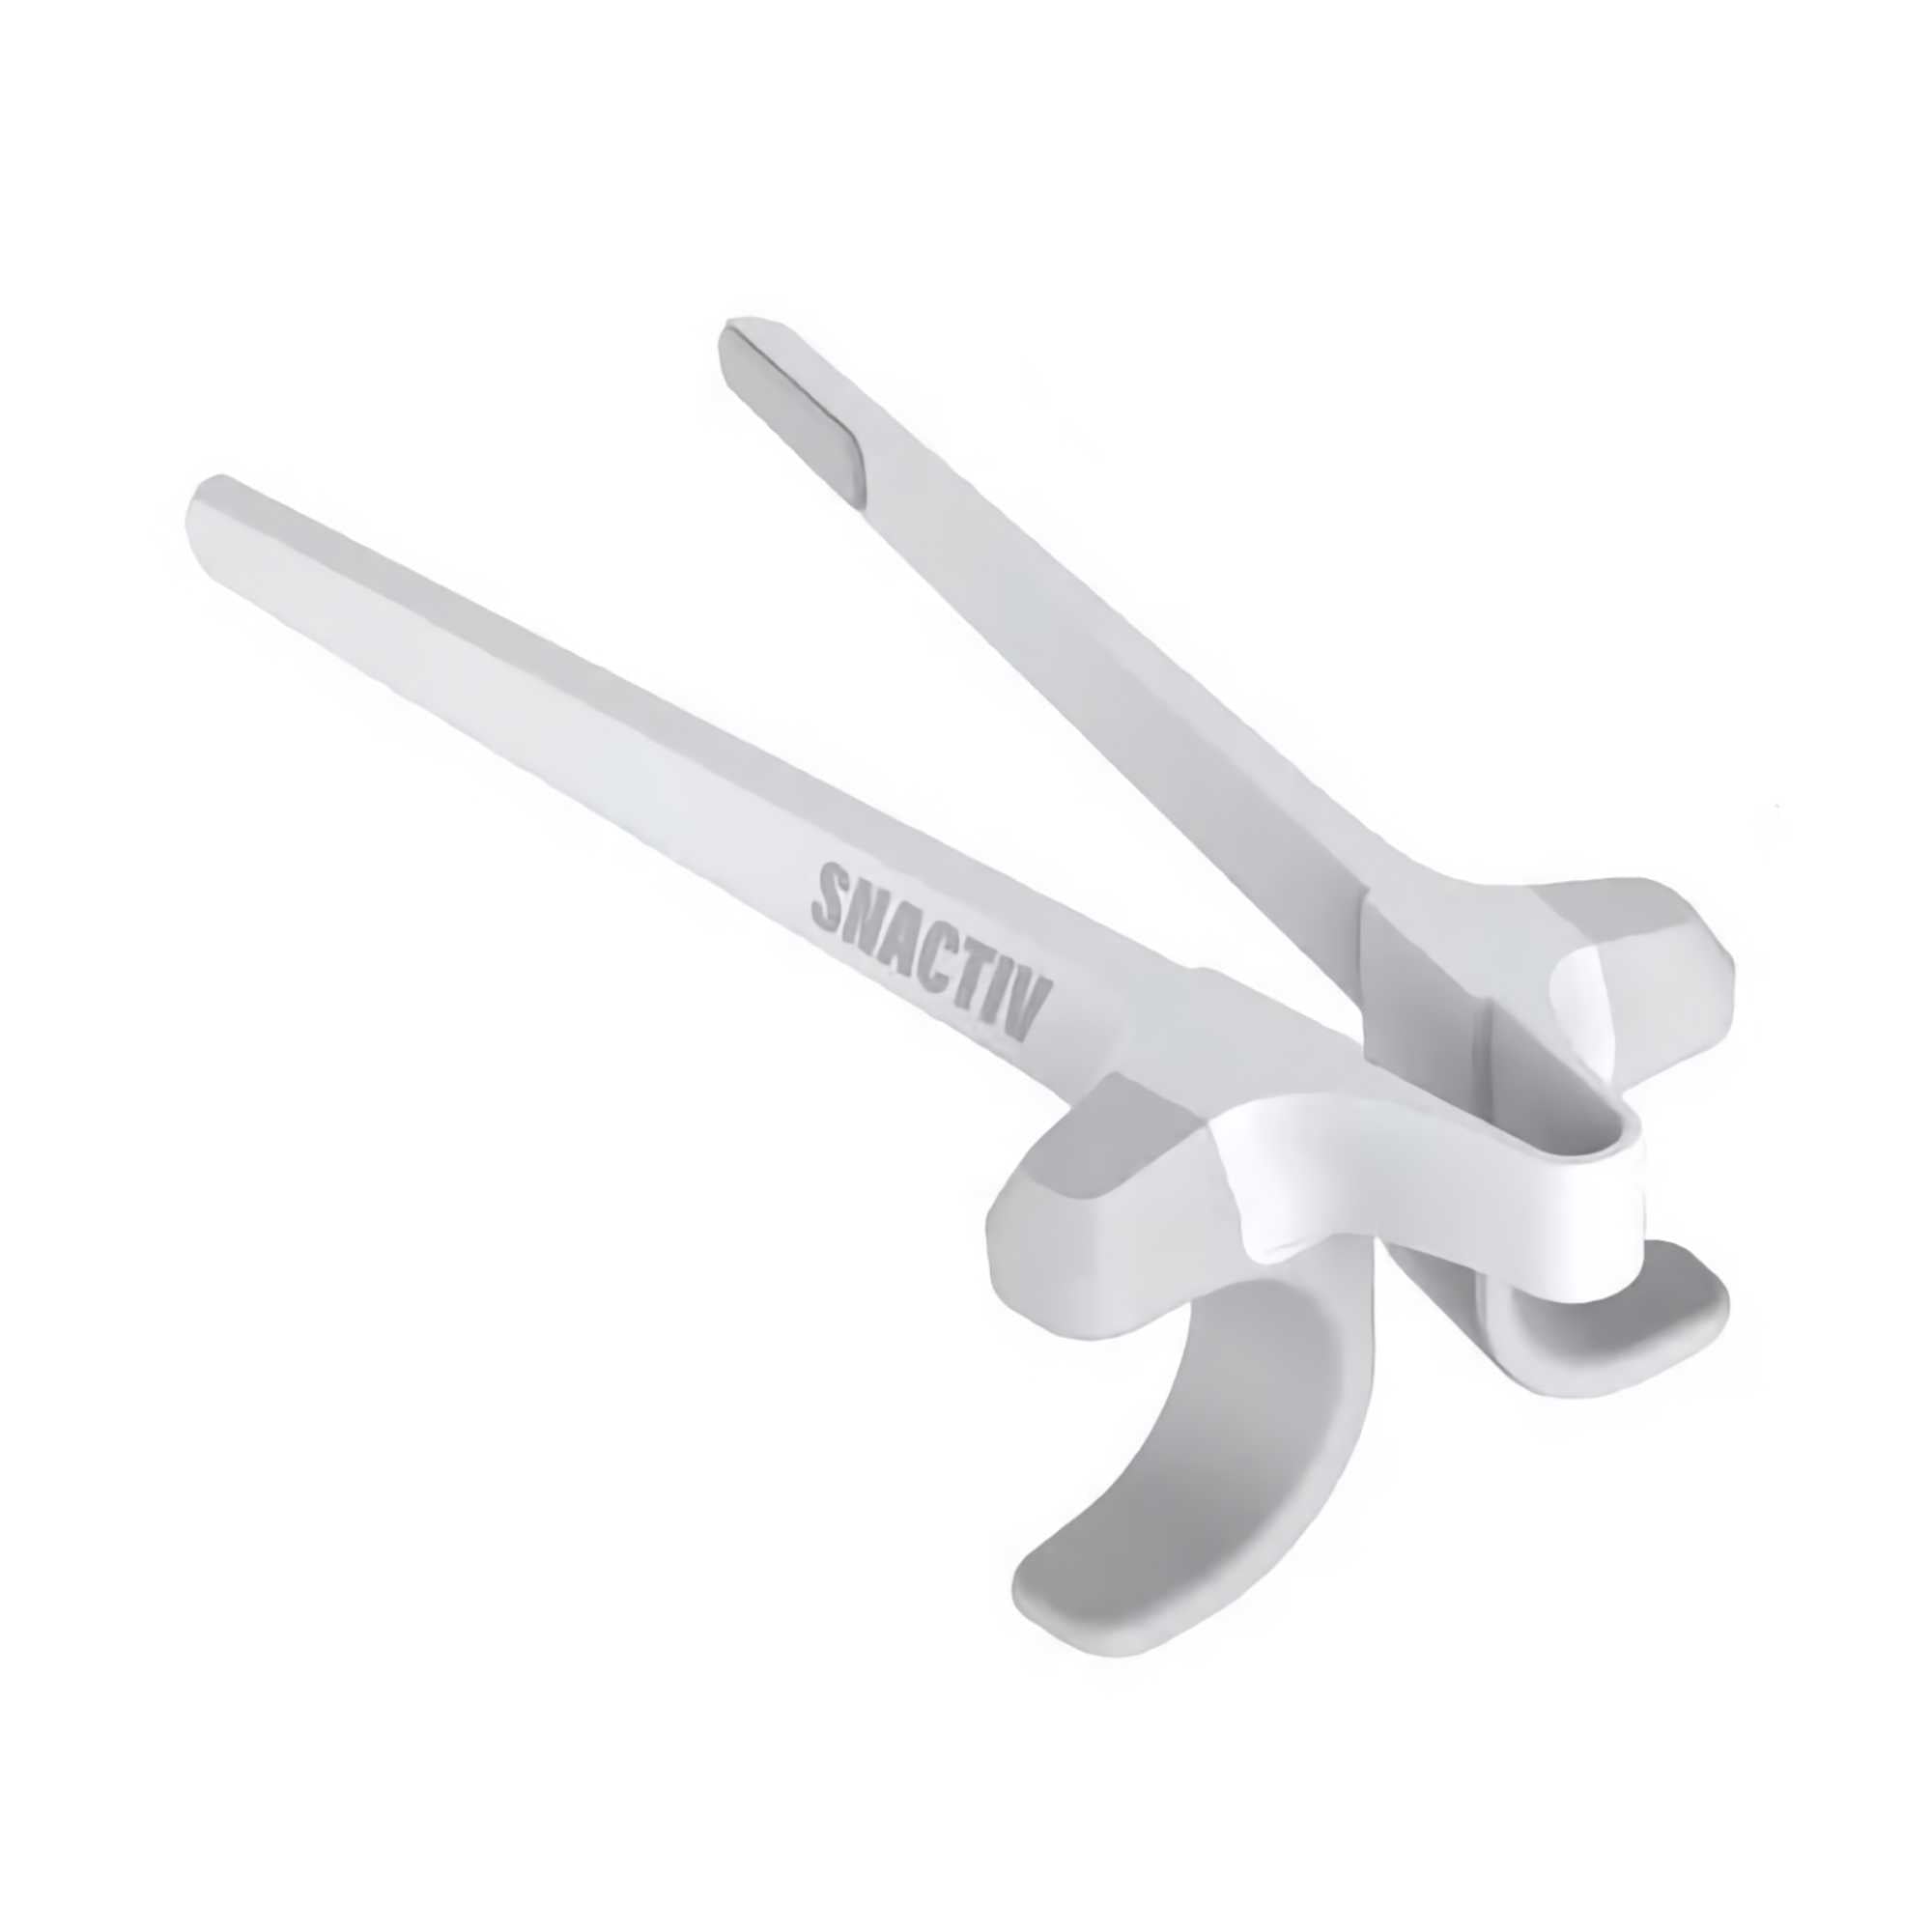 Snactiv wearable chopsticks, light mode